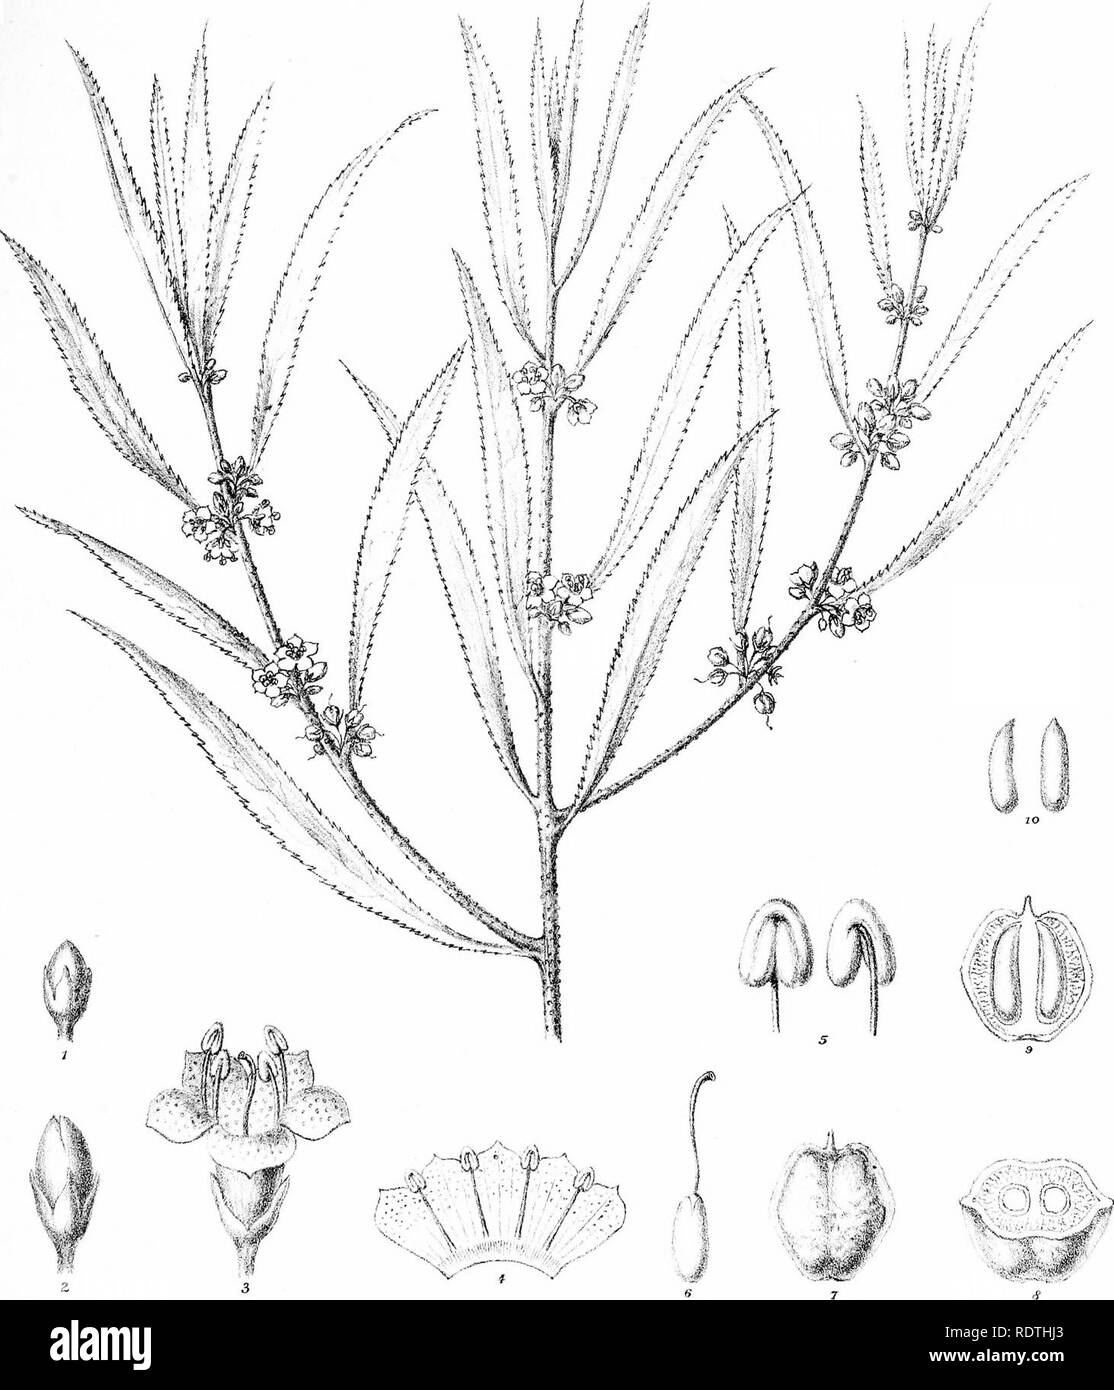 . La descrizione e le illustrazioni delle piante myoporinous dell Australia. Vol. 2. Lithograms. Myoporaceae; Botanica. m. R Graff del. CTroedel ^ C? LitK. FvlVr.direxiT: Ll vapore^ho. Gov: Stampa di f ice MelT). p")(Dffmm ]1 ,(i FvM.. Si prega di notare che queste immagini vengono estratte dalla pagina sottoposta a scansione di immagini che possono essere state migliorate digitalmente per la leggibilità - Colorazione e aspetto di queste illustrazioni potrebbero non perfettamente assomigliano al lavoro originale. Mueller, Ferdinand von, 1825-1896. Melbourne, J. Ferres Foto Stock